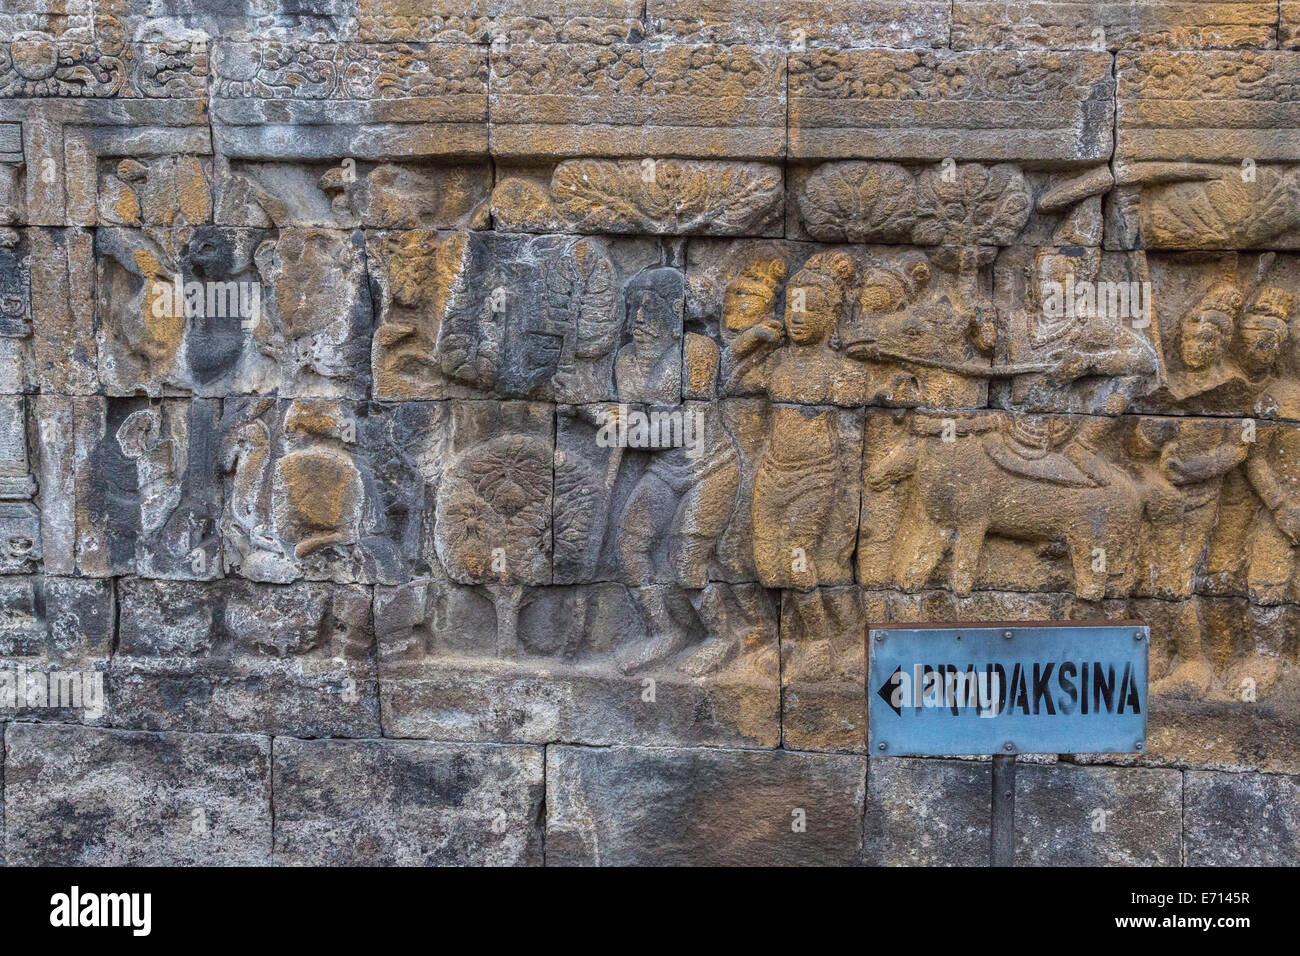 Borobudur, Java, Indonesia. Escenas de la vida del Buda. "Pradaksina' indica el sentido de las agujas del reloj para caminar. Foto de stock